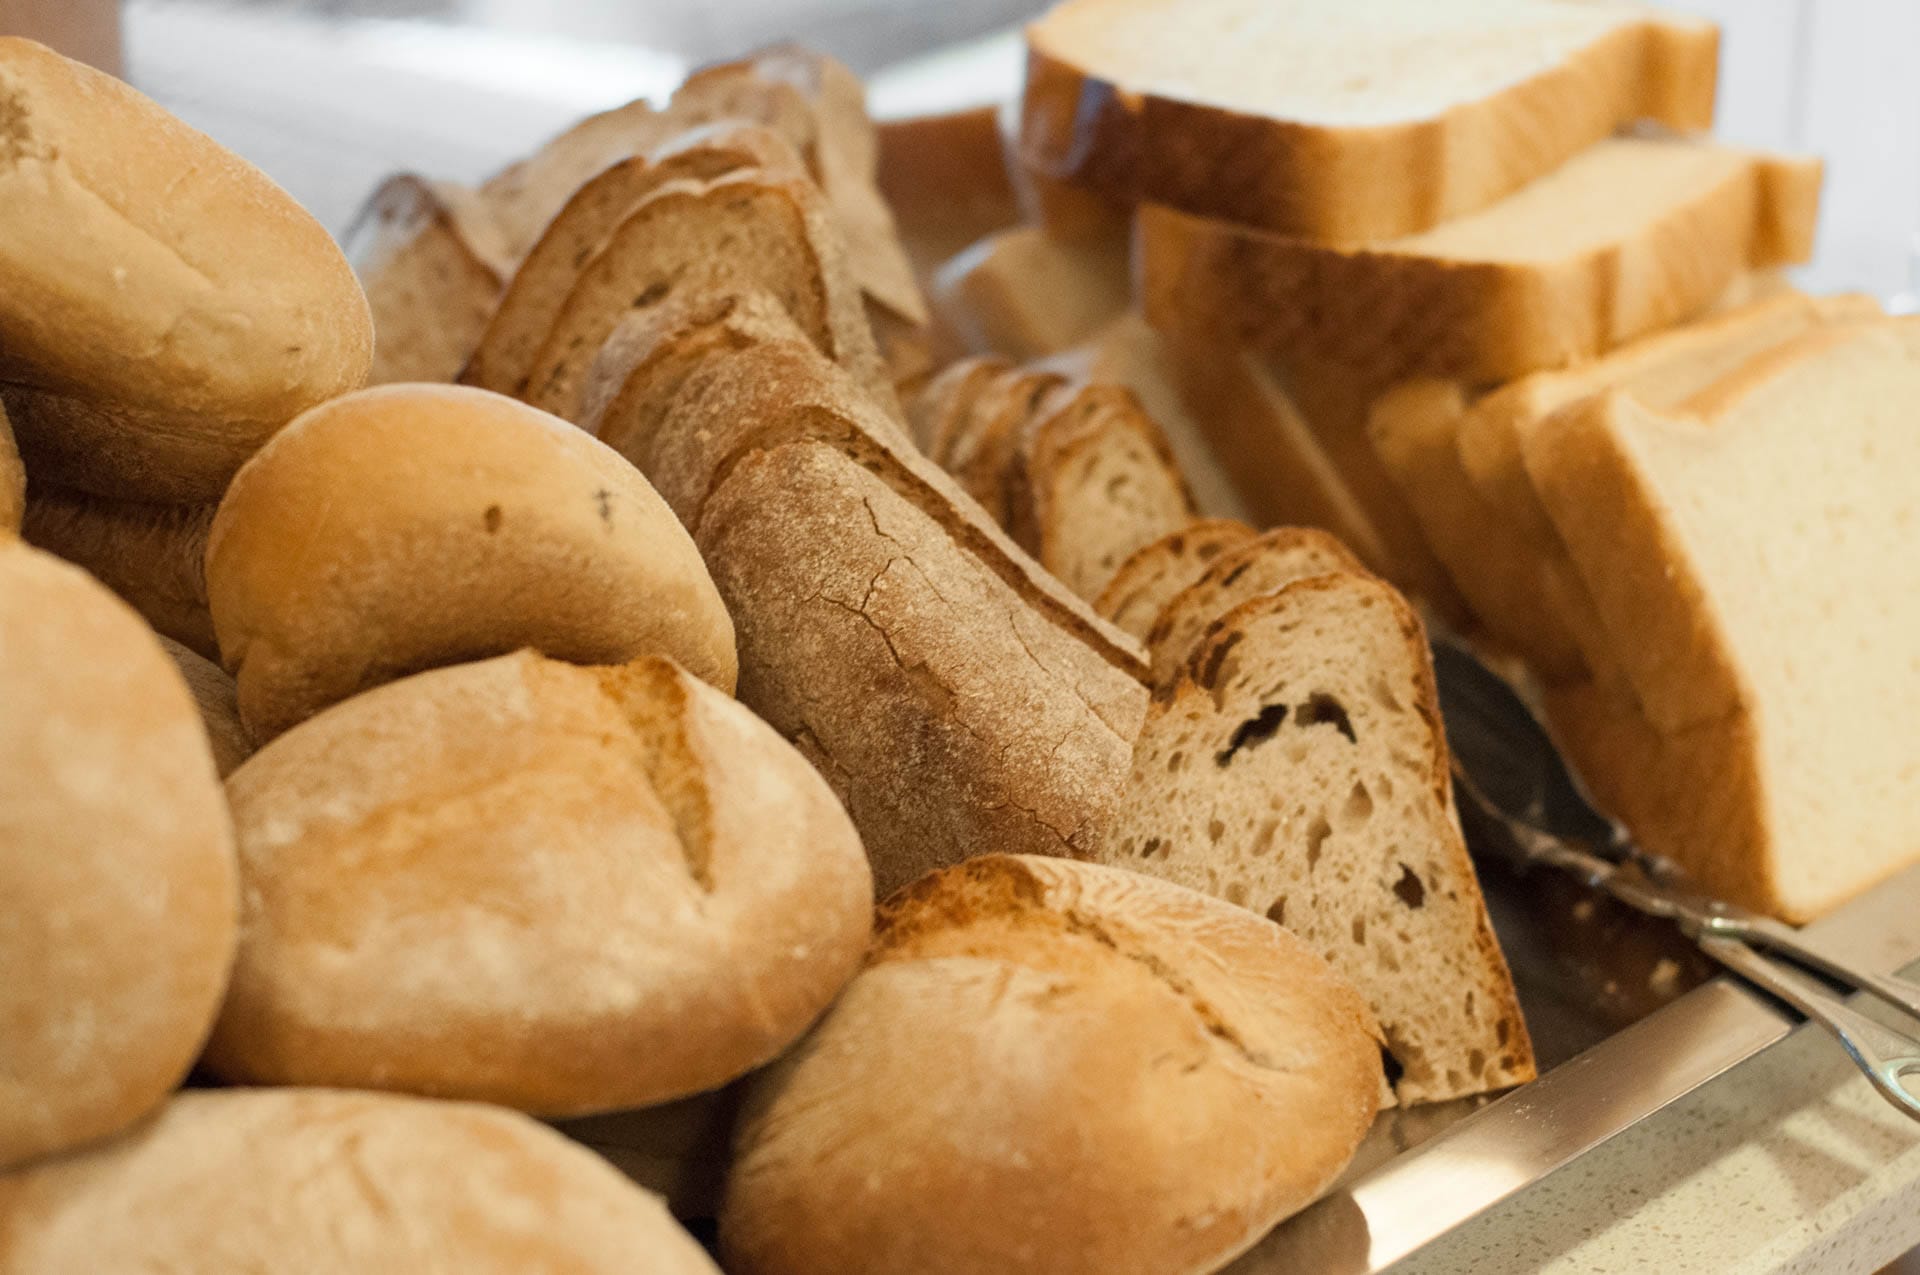 Vários tipos de pão do pequeno almoço (bolas, caseiro, forma)